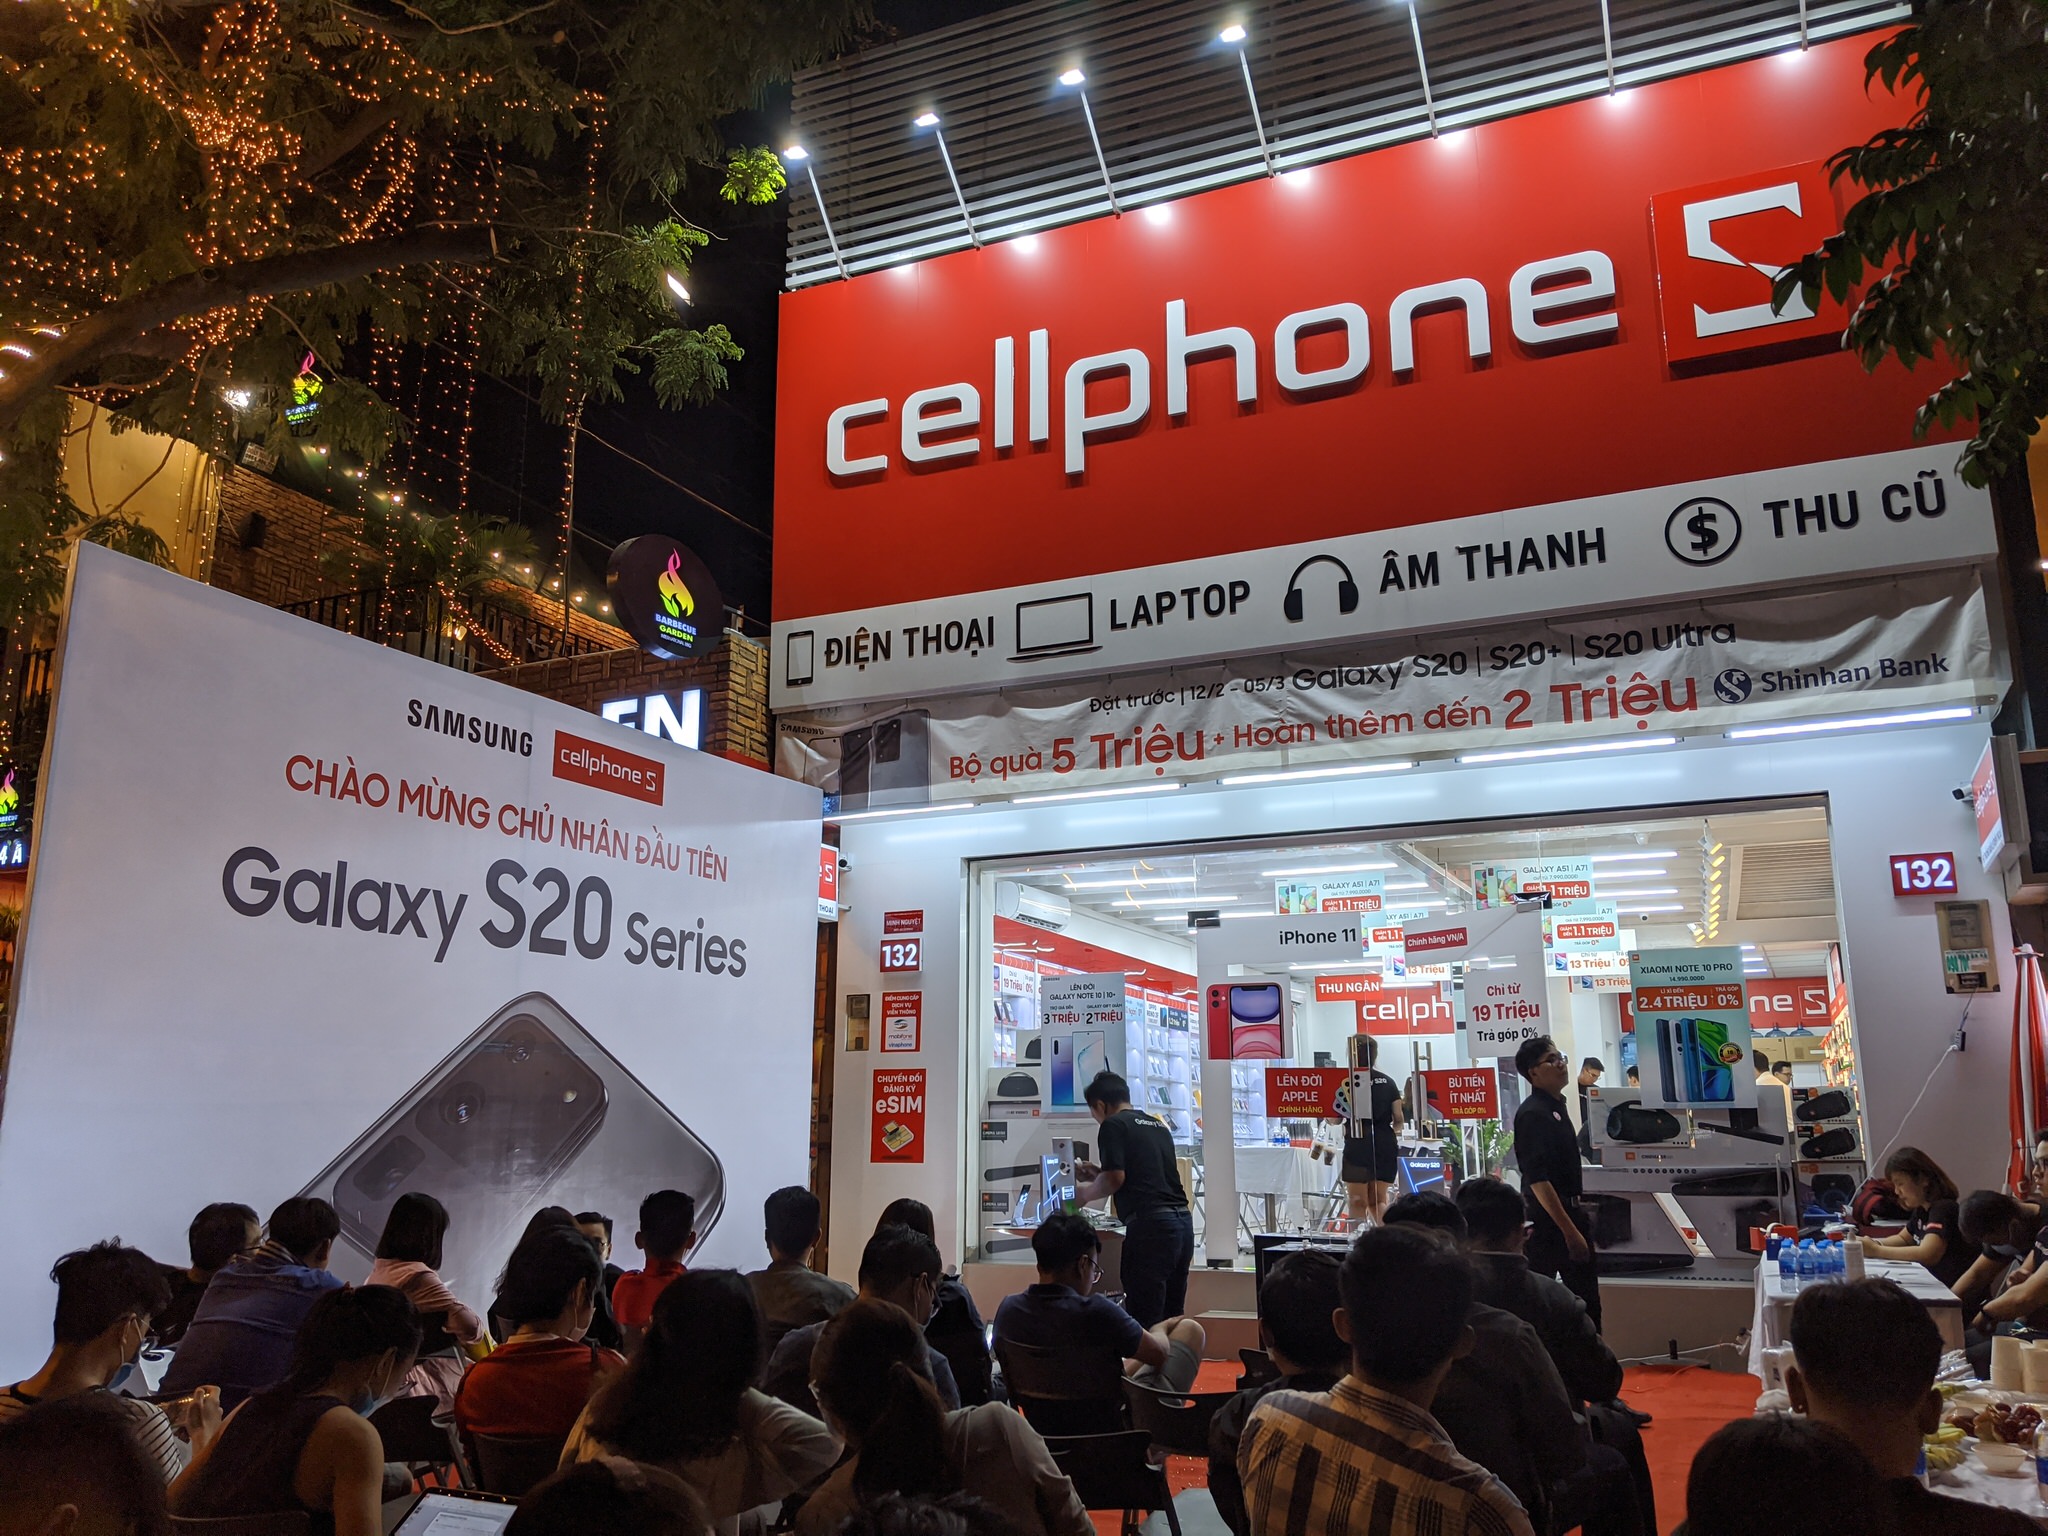 Hình ảnh buổi mở bán Galaxy S20 Series tại CellphoneS rạng sáng 06/03